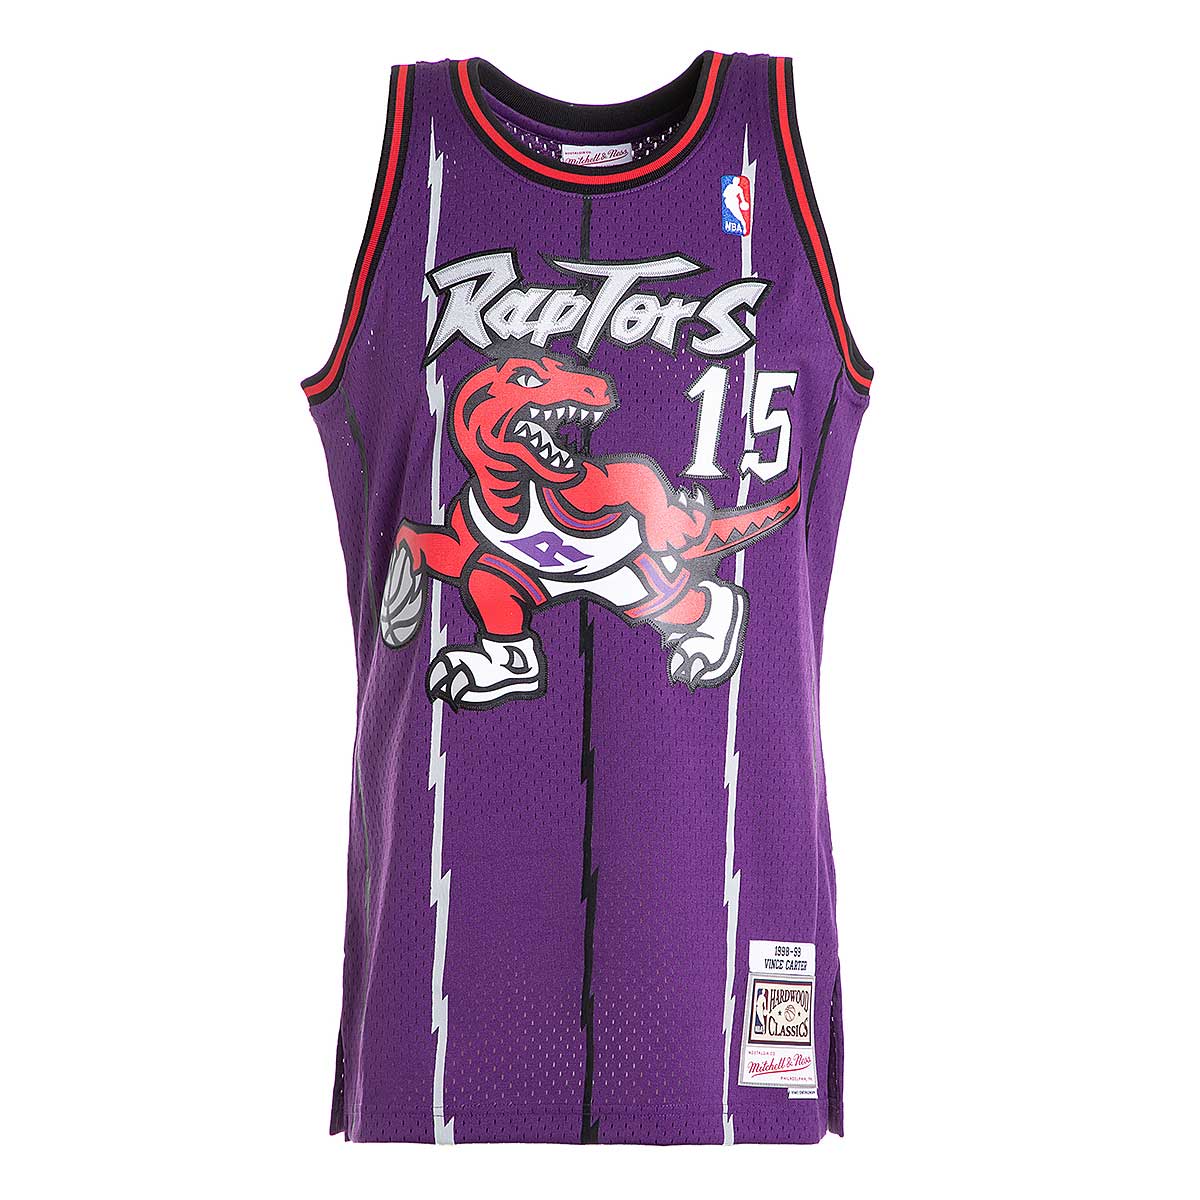 Rétro 98-99 Vince Carter #15 Toronto Raptors Basketball Maillots Stitched Violet 